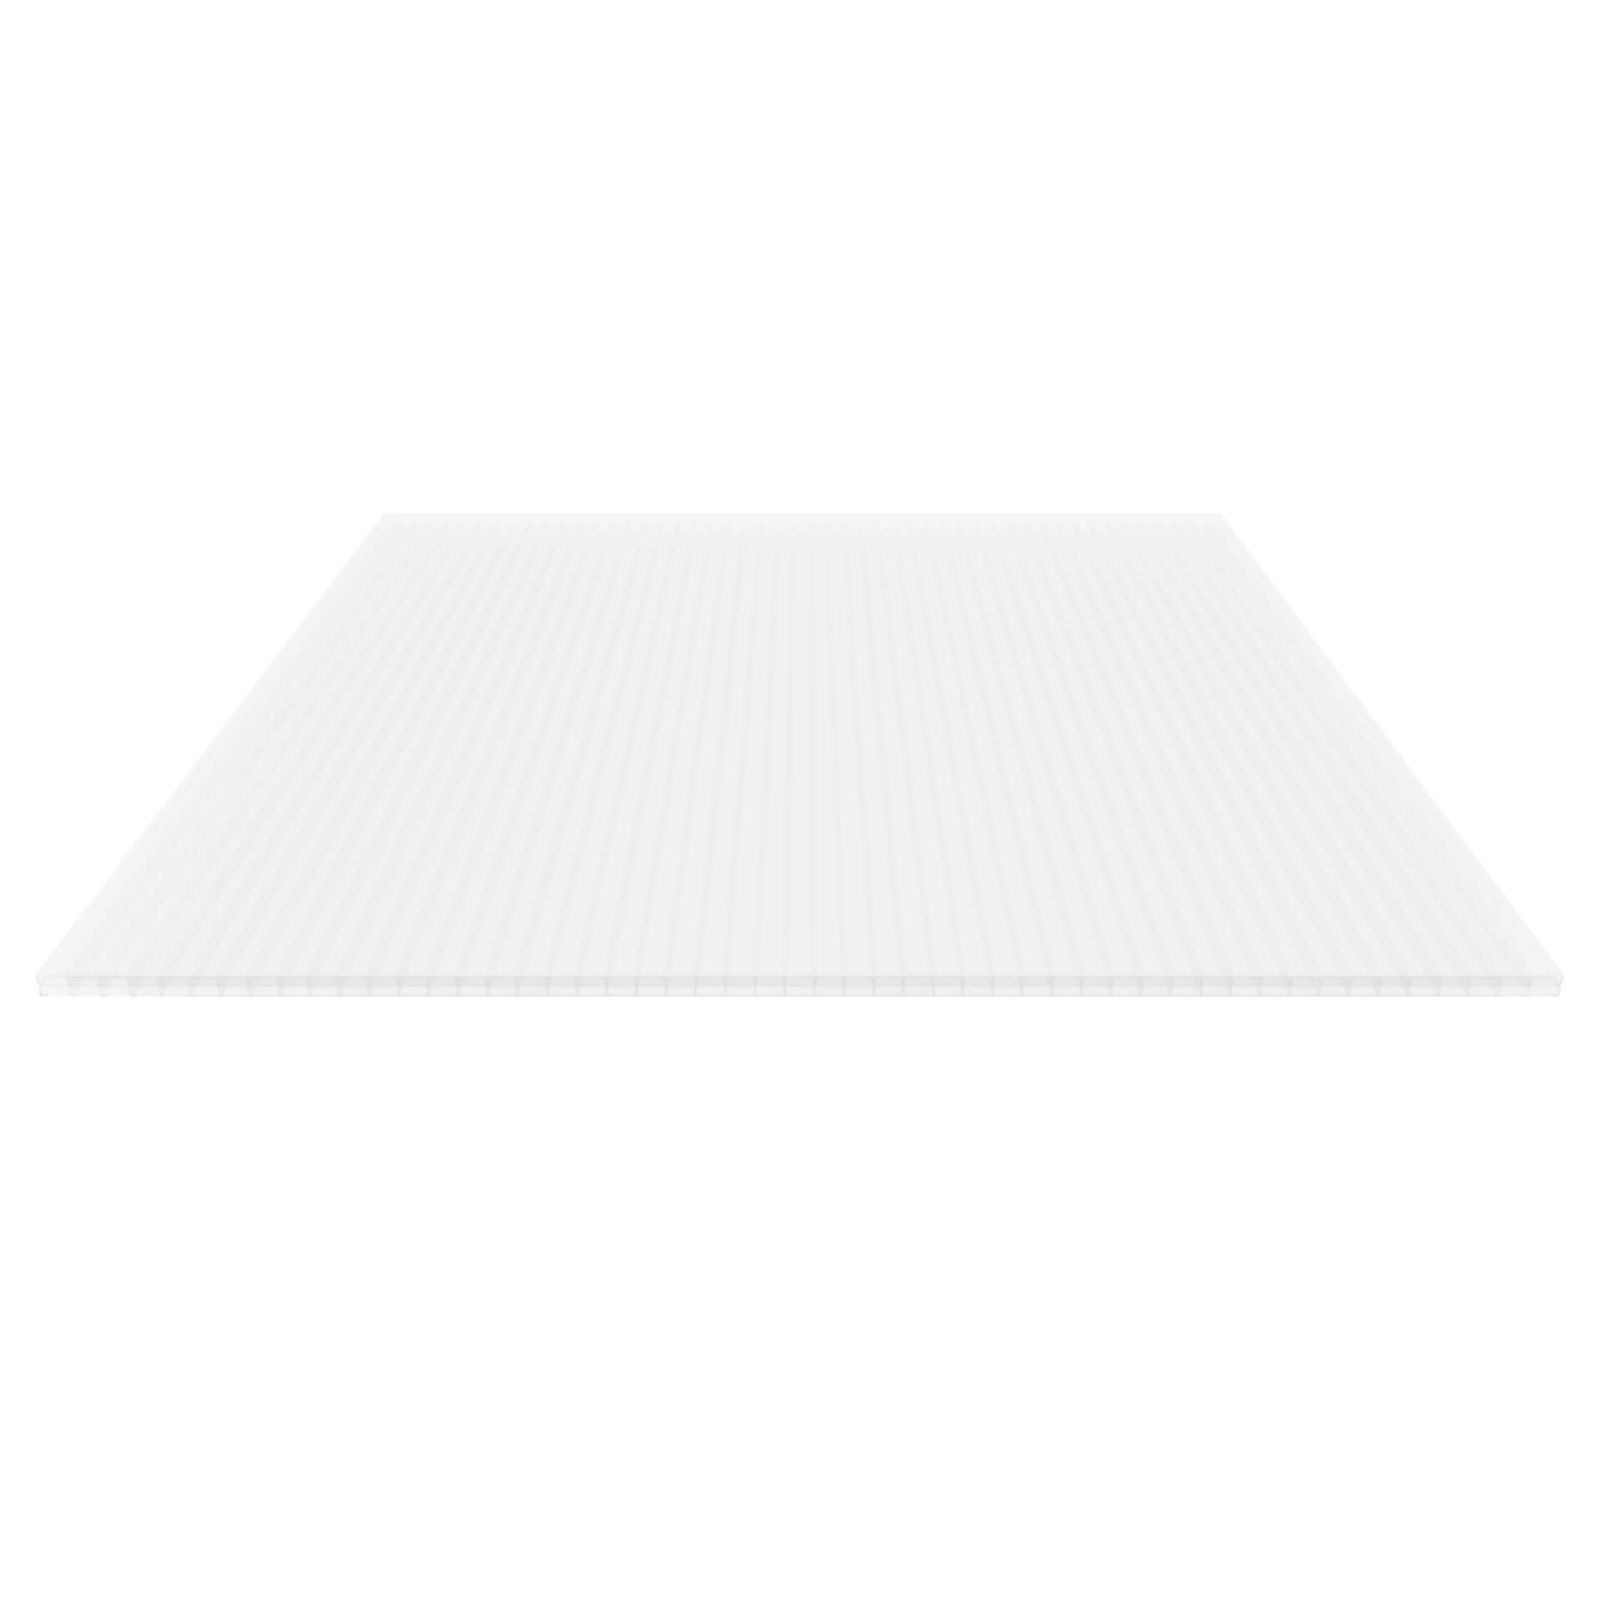 Polycarbonat Stegplatte | 16 mm | Profil Mendiger | Sparpaket | Plattenbreite 1200 mm | Opal Weiß | Breite 3,75 m | Länge 2,00 m #5